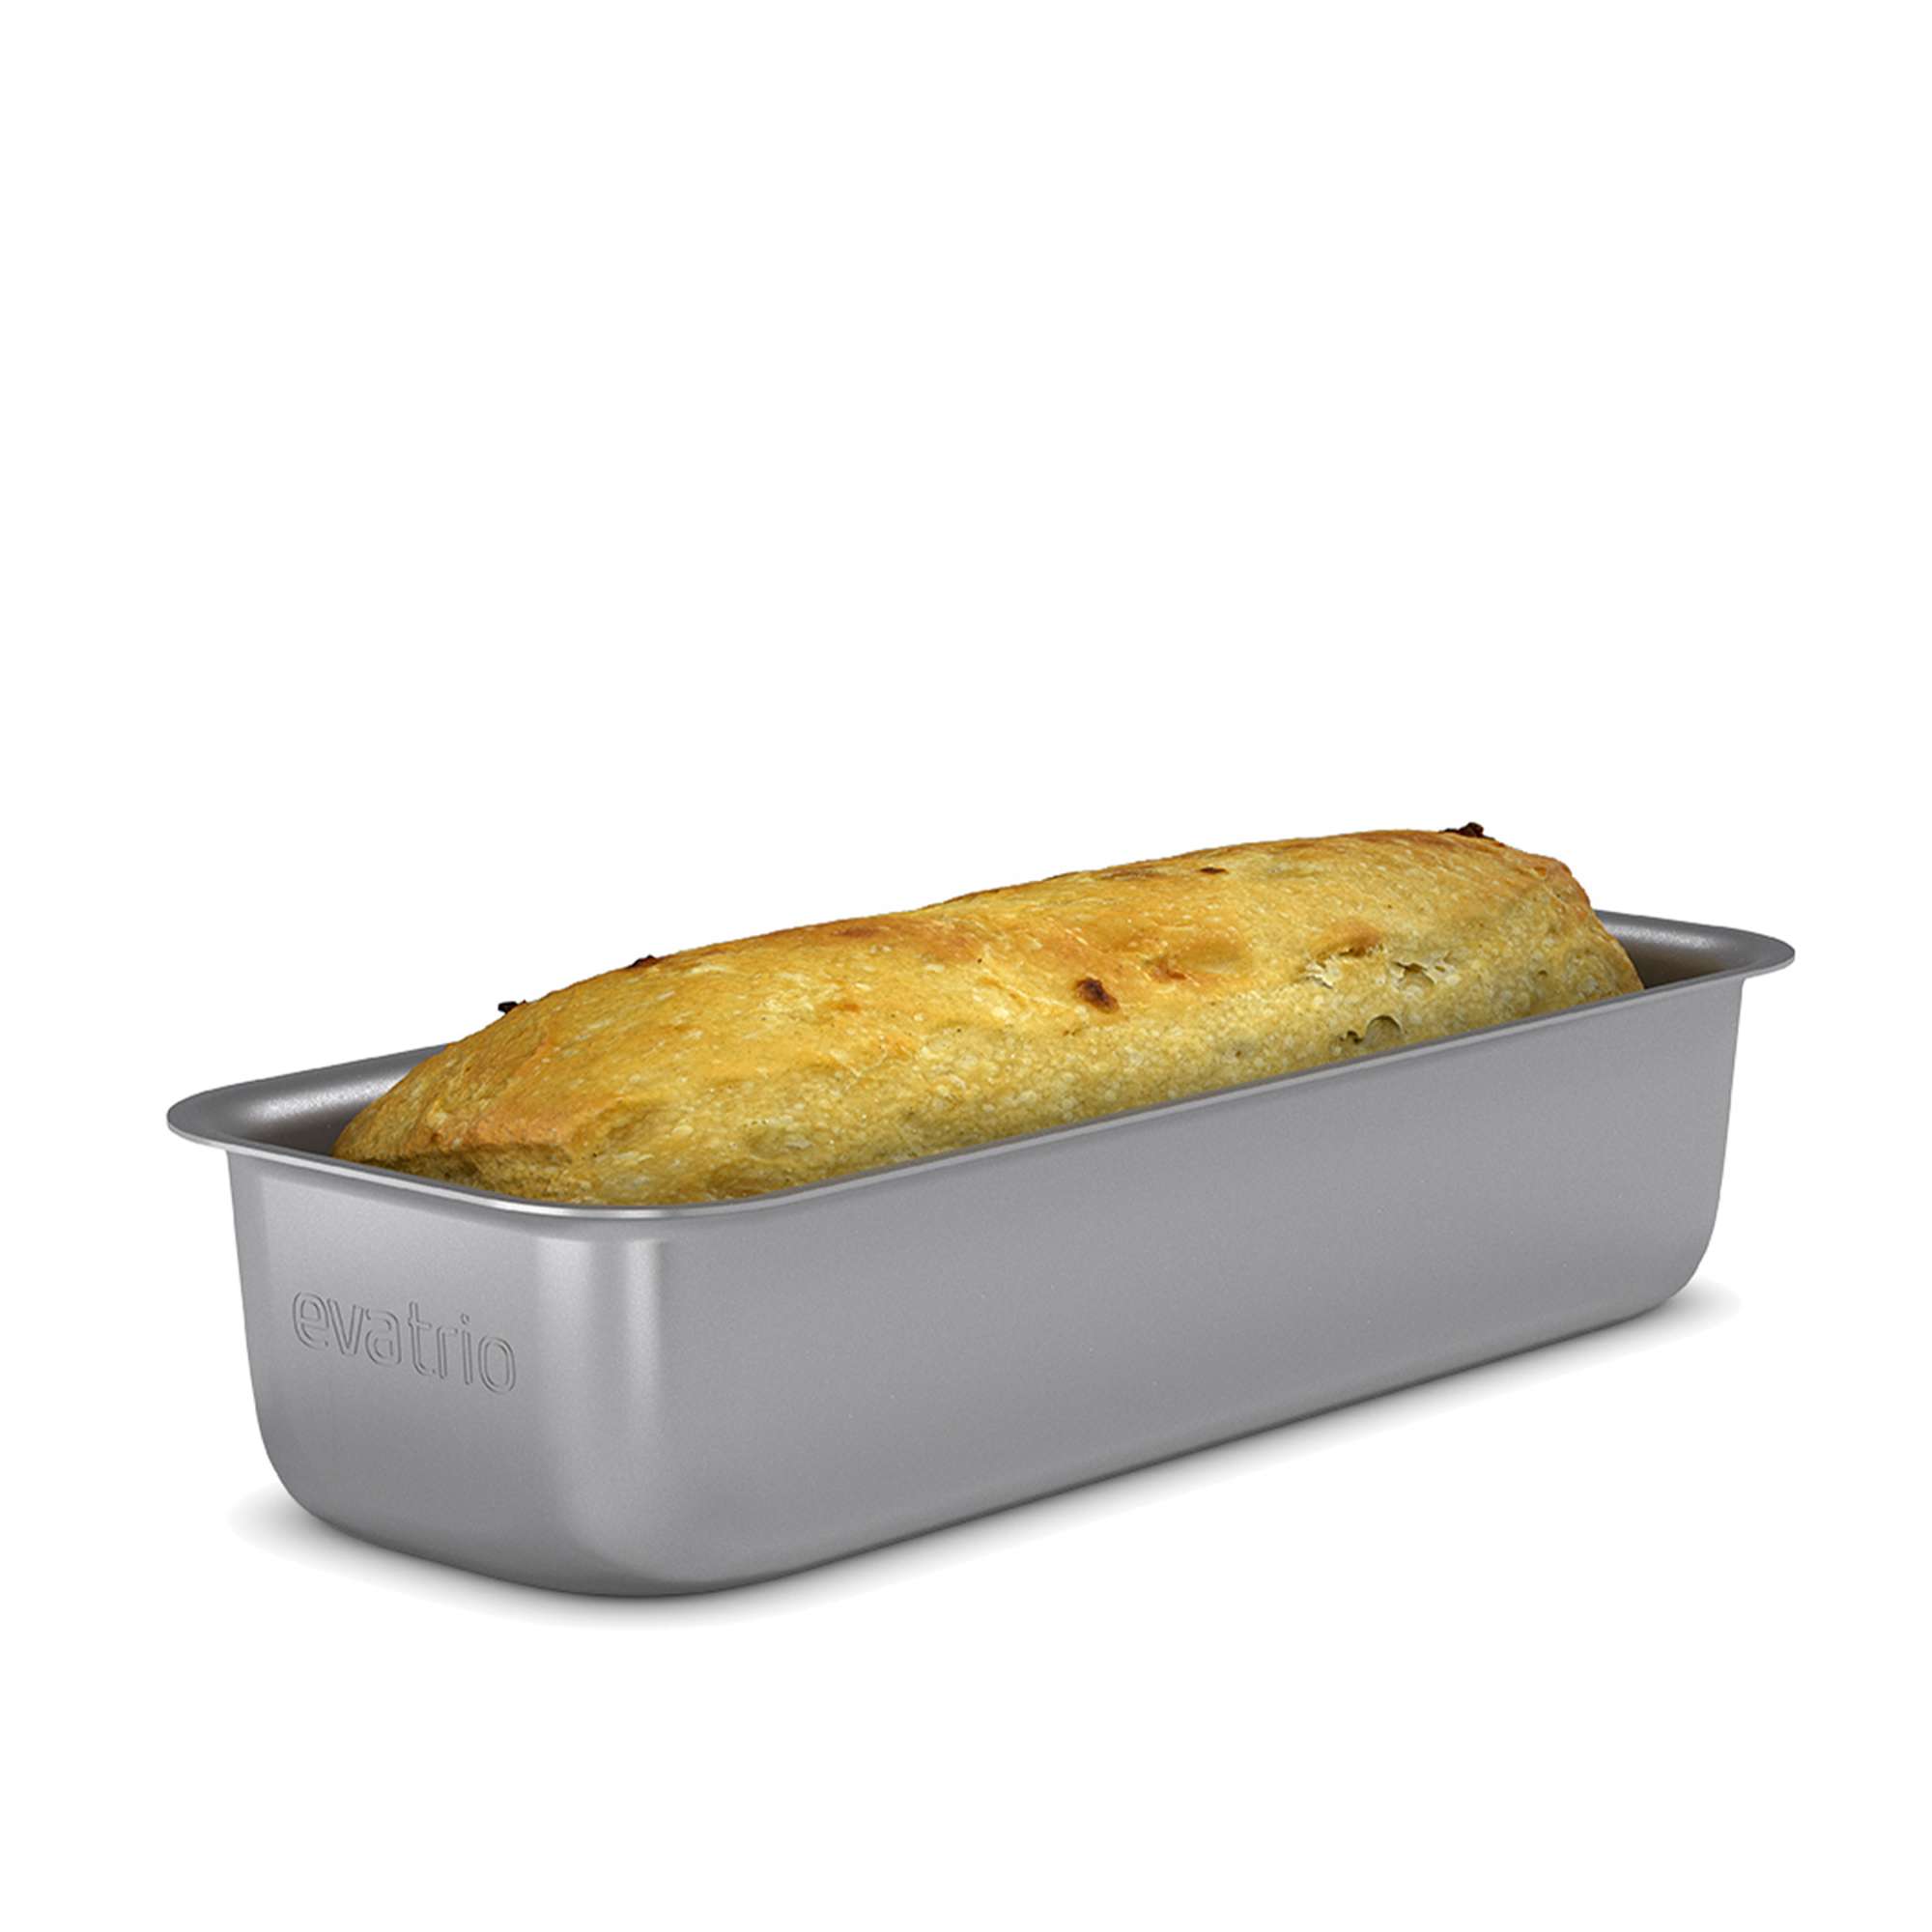 Professional bread/cake tin - 1,35 l - ceramic Slip-Let® coating